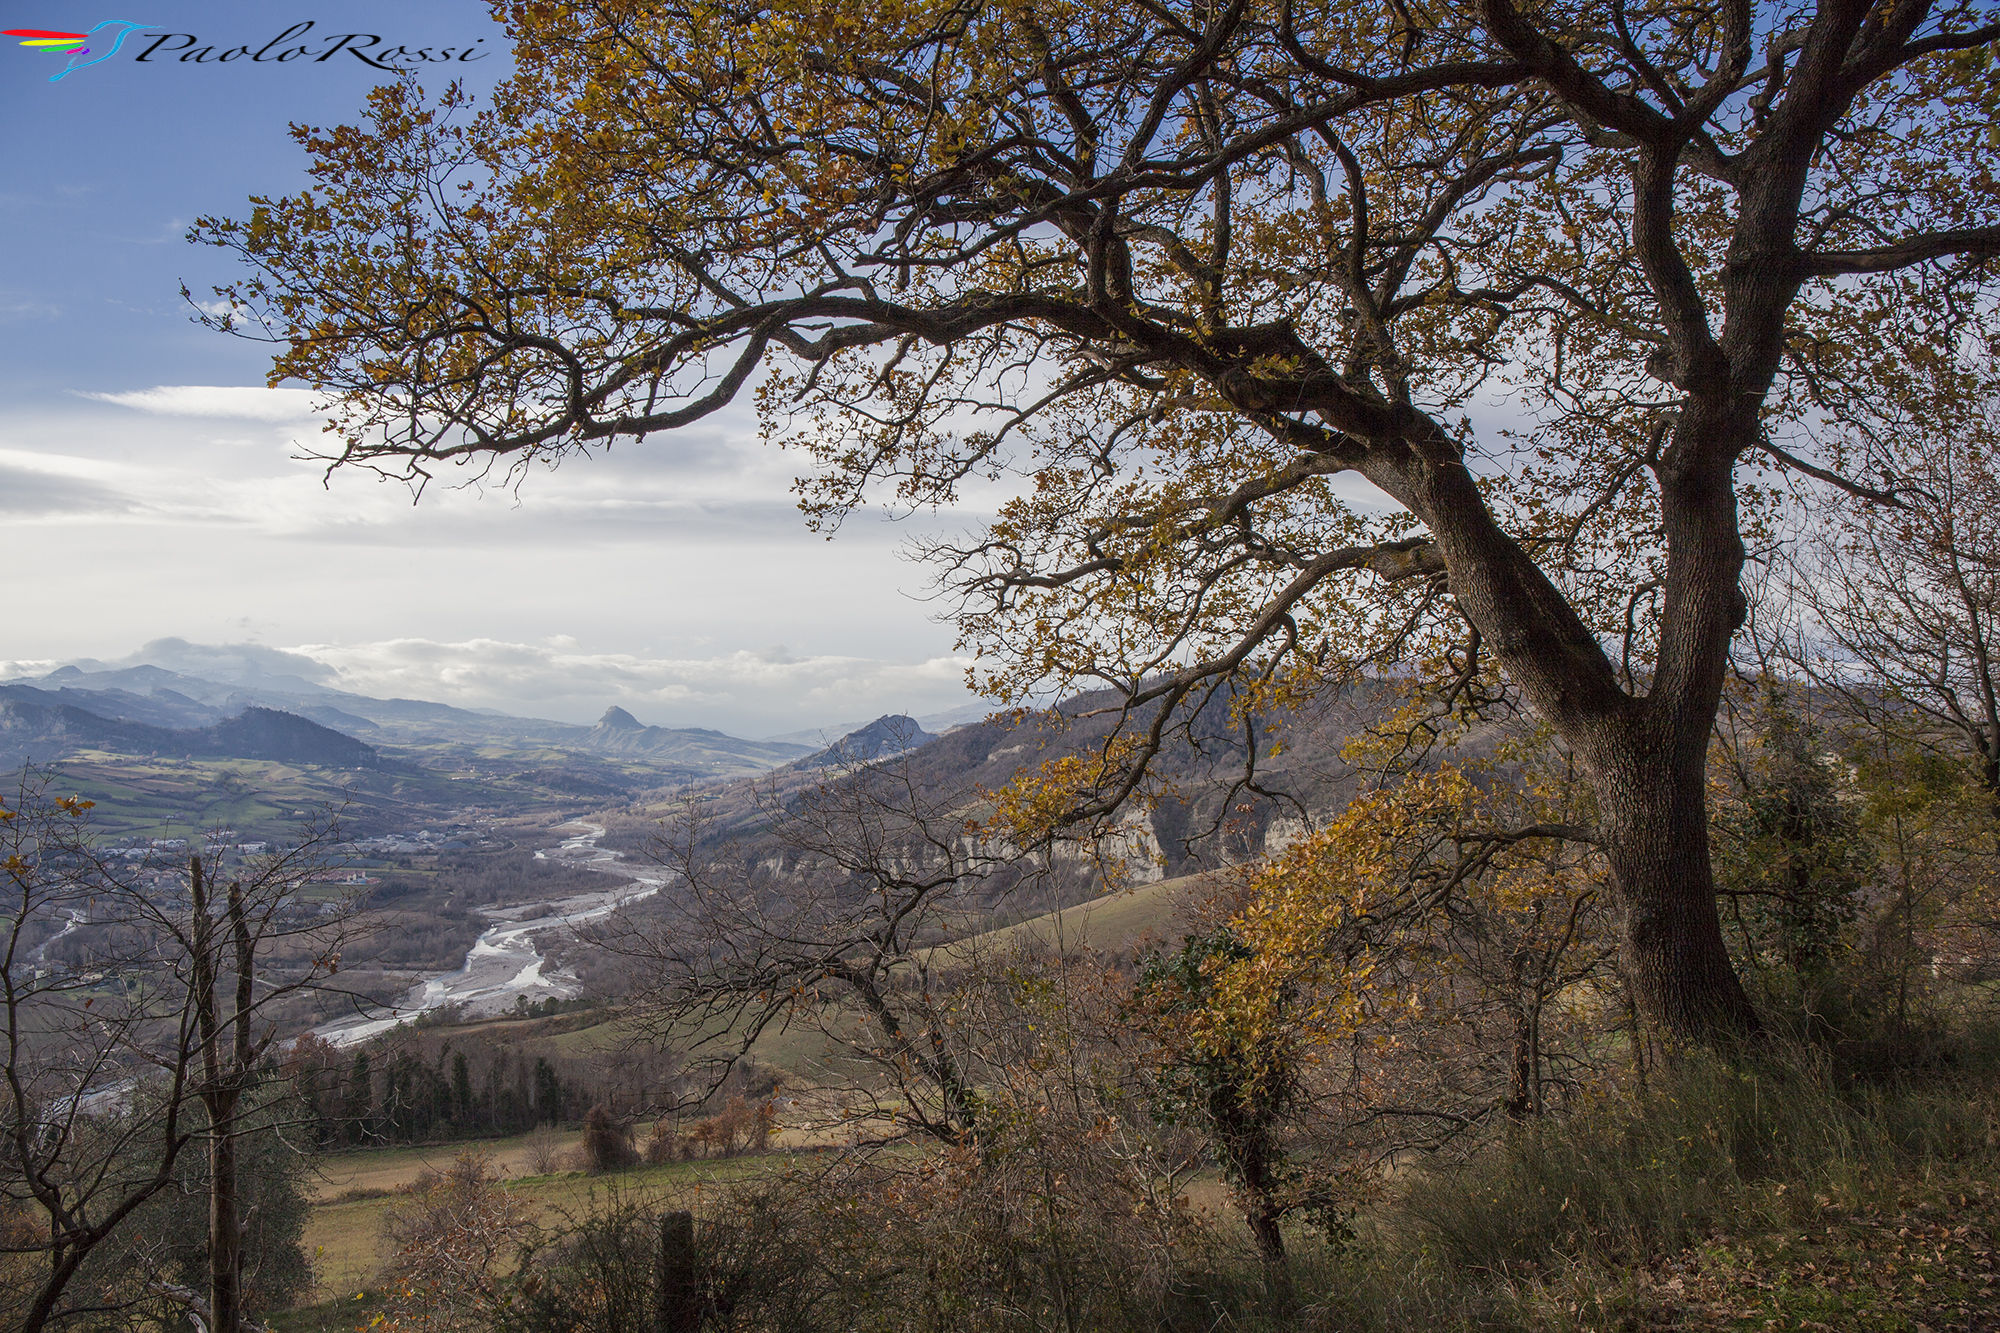 Vista panoramica della Valmarecchia...Buon anno a tutti...